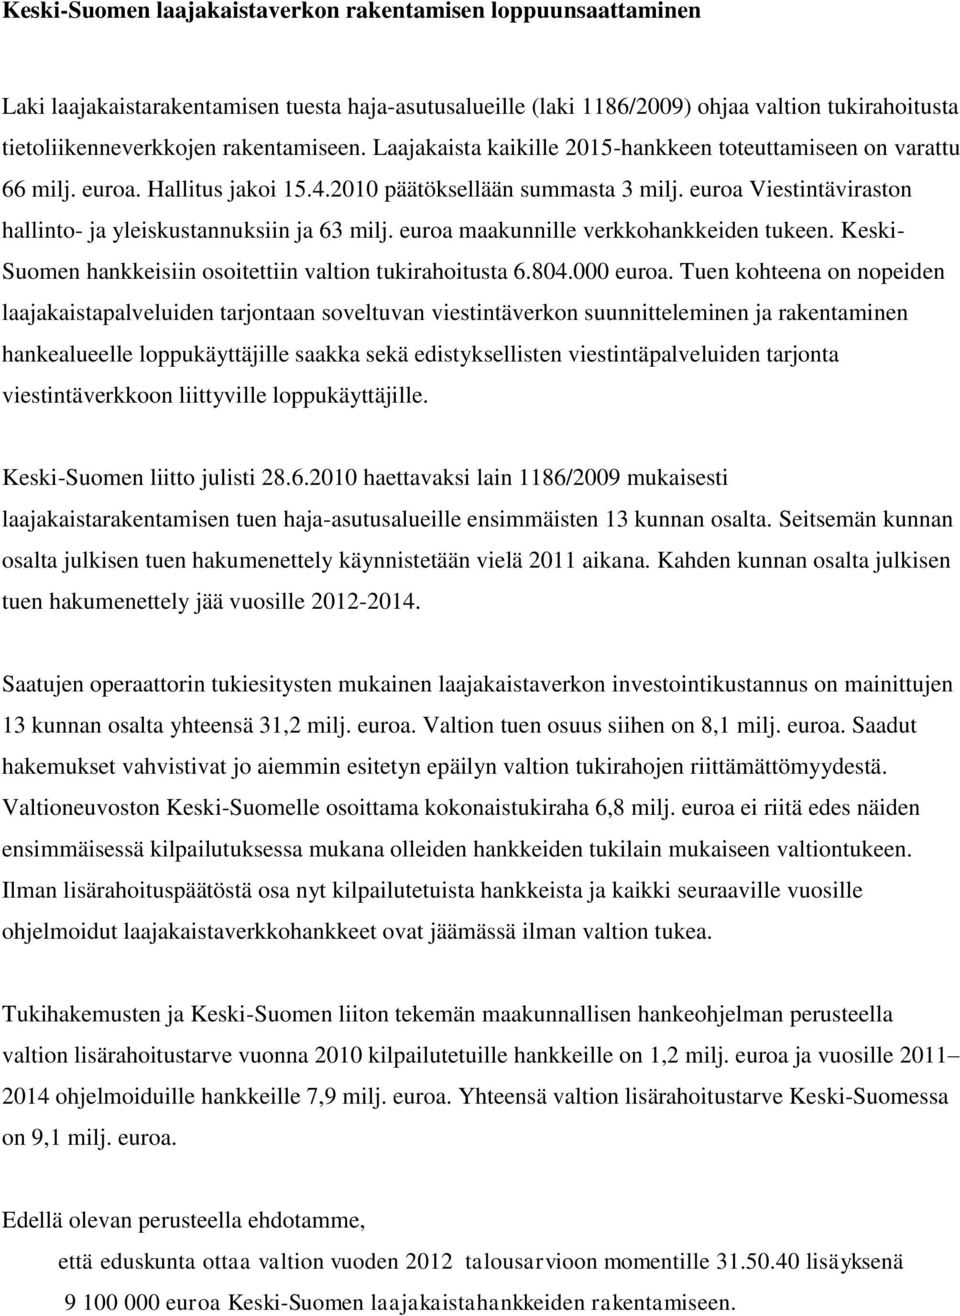 euroa Viestintäviraston hallinto- ja yleiskustannuksiin ja 63 milj. euroa maakunnille verkkohankkeiden tukeen. Keski- Suomen hankkeisiin osoitettiin valtion tukirahoitusta 6.804.000 euroa.